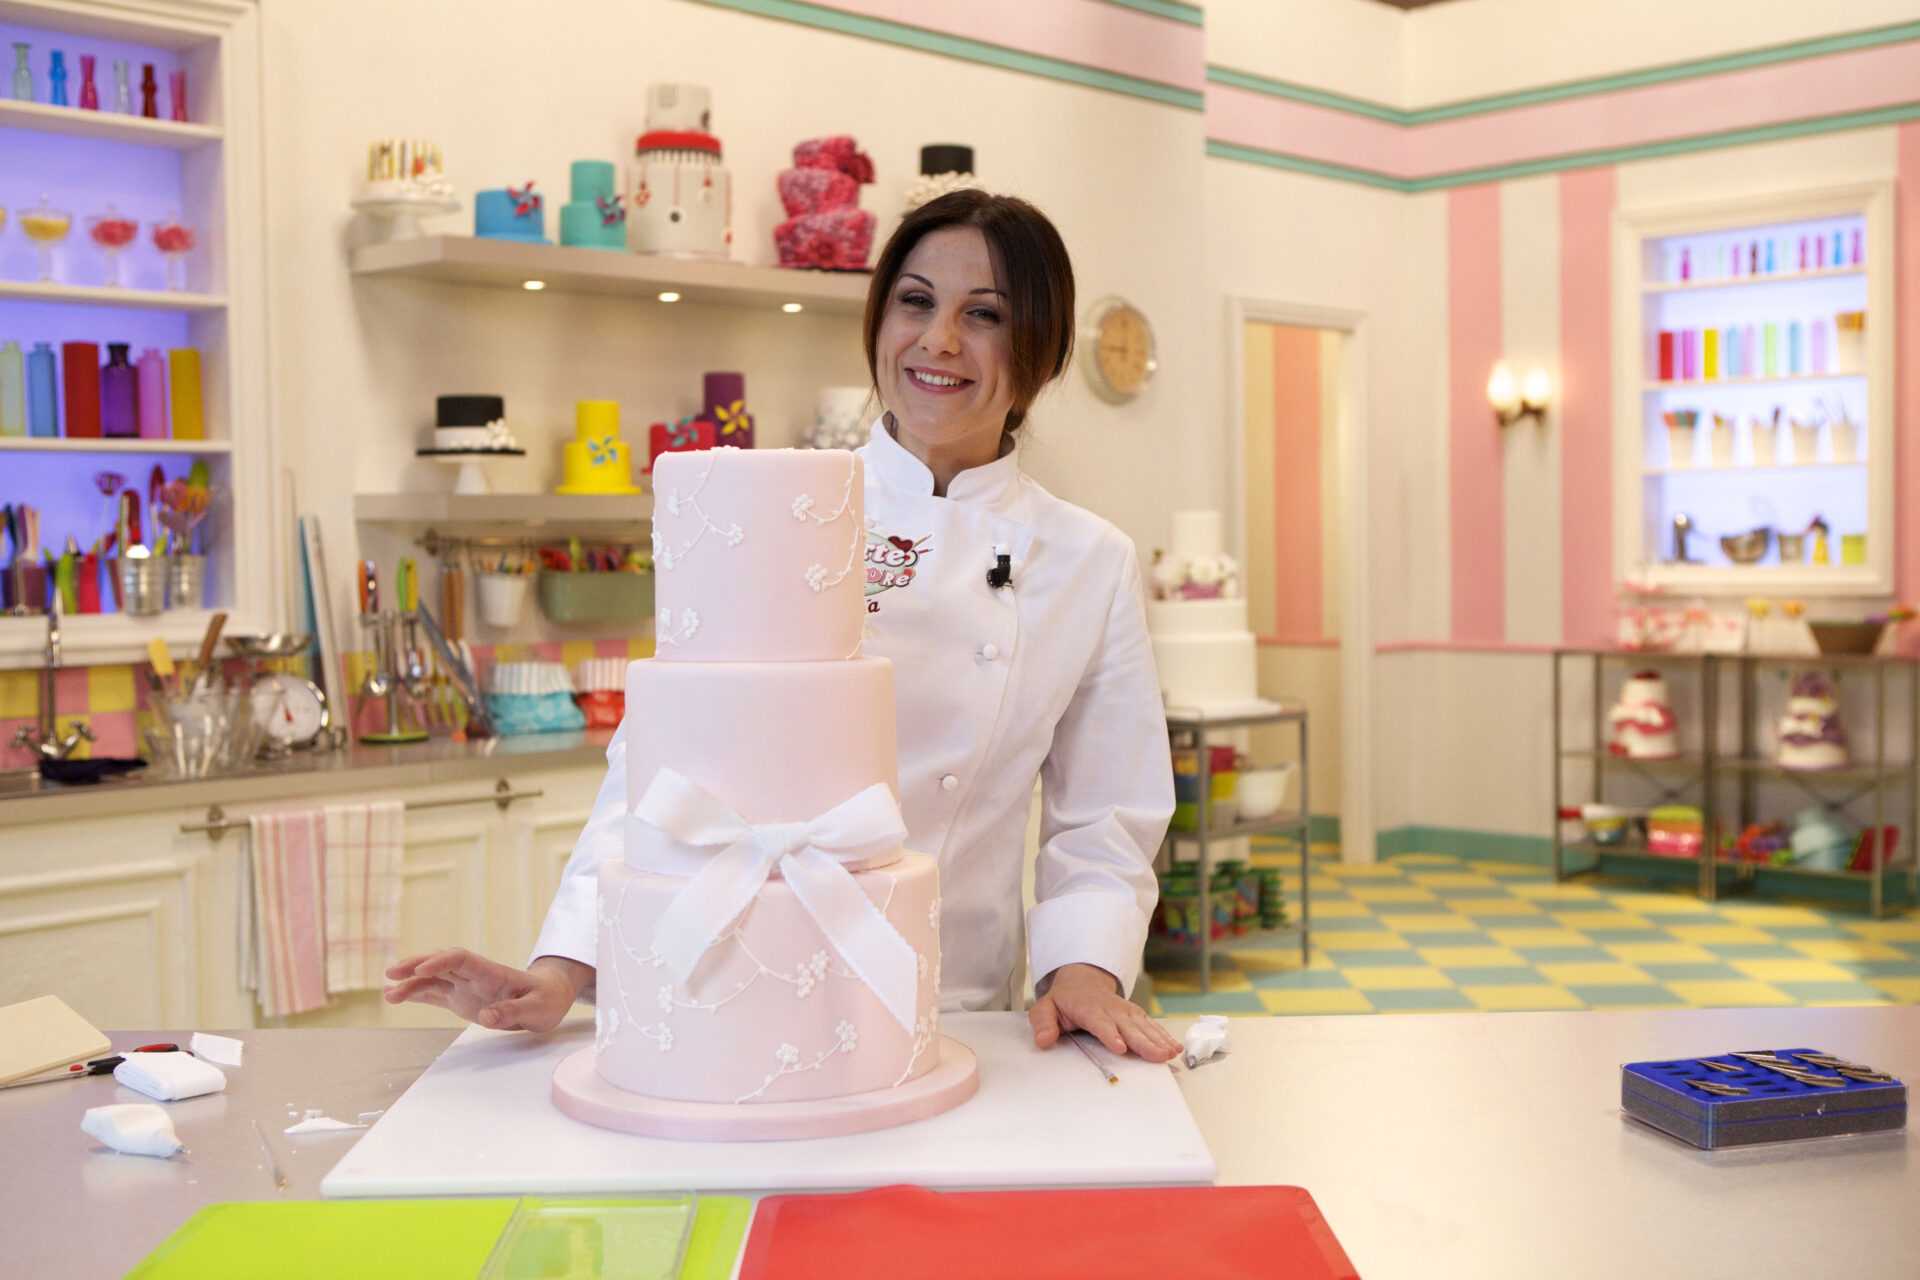 La5: Torna "Torte d'autore" con la cake designer Paola Azzolina | Digitale terrestre: Dtti.it